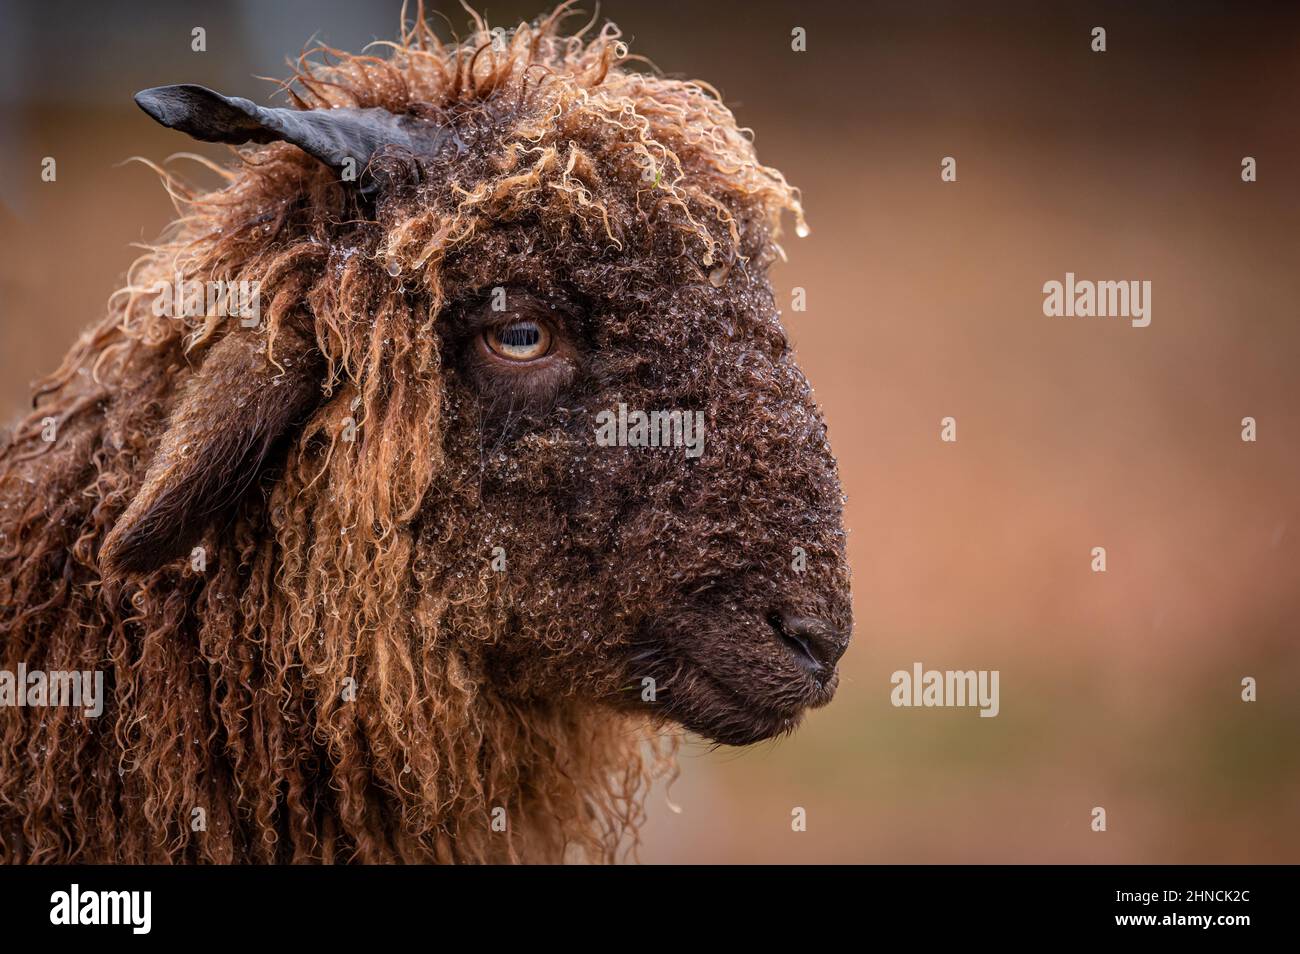 Ritratto di pecora svizzera. Una pelliccia riccio orriata di pecore di campagna Wallis. Roux du Vallese. Svizzera. Carino. Foto Stock